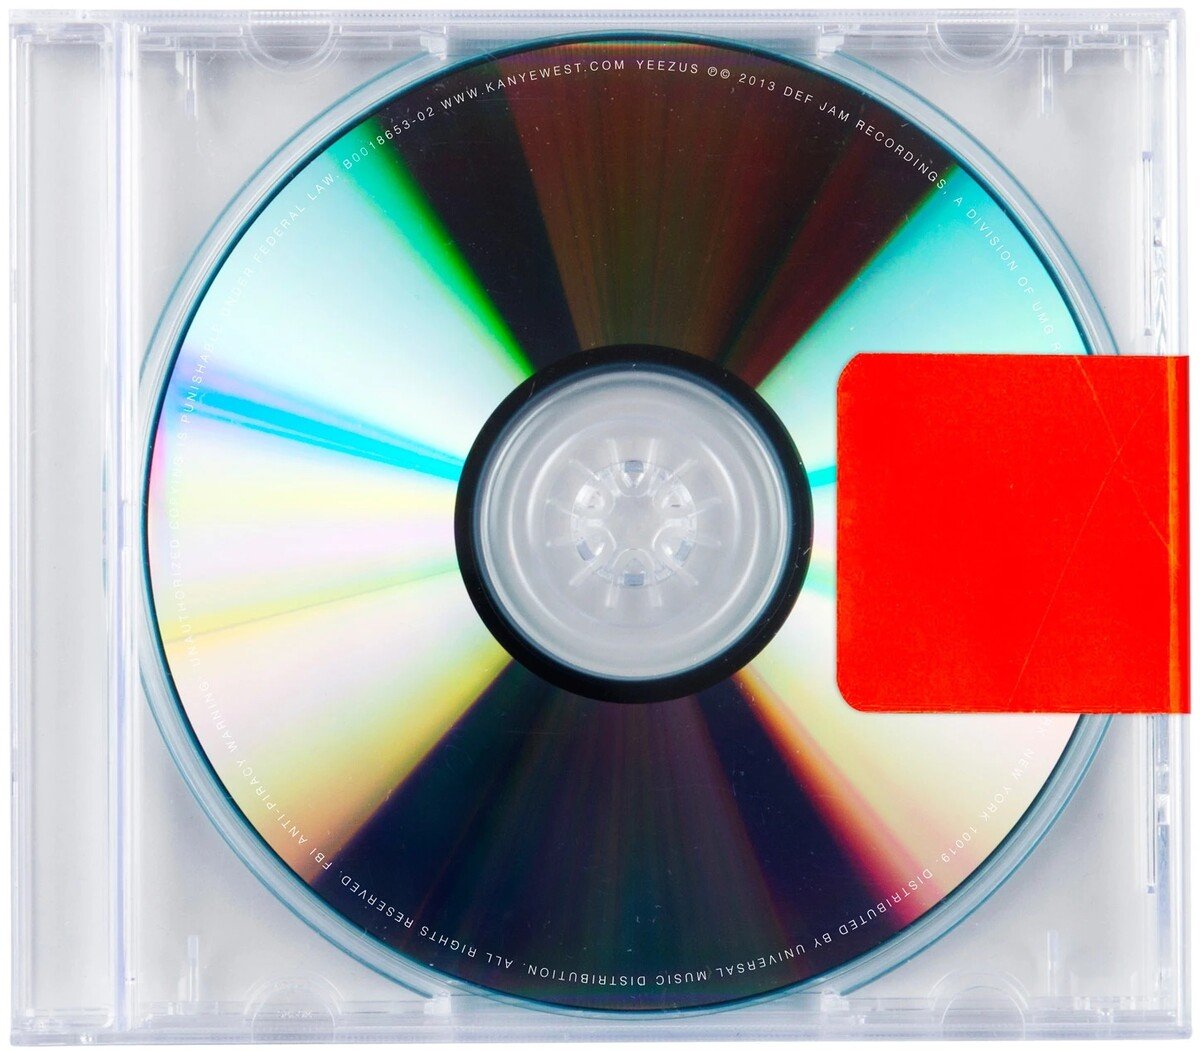 Album Yeezus, ktorý vydal raper Kanye West v roku 2013.